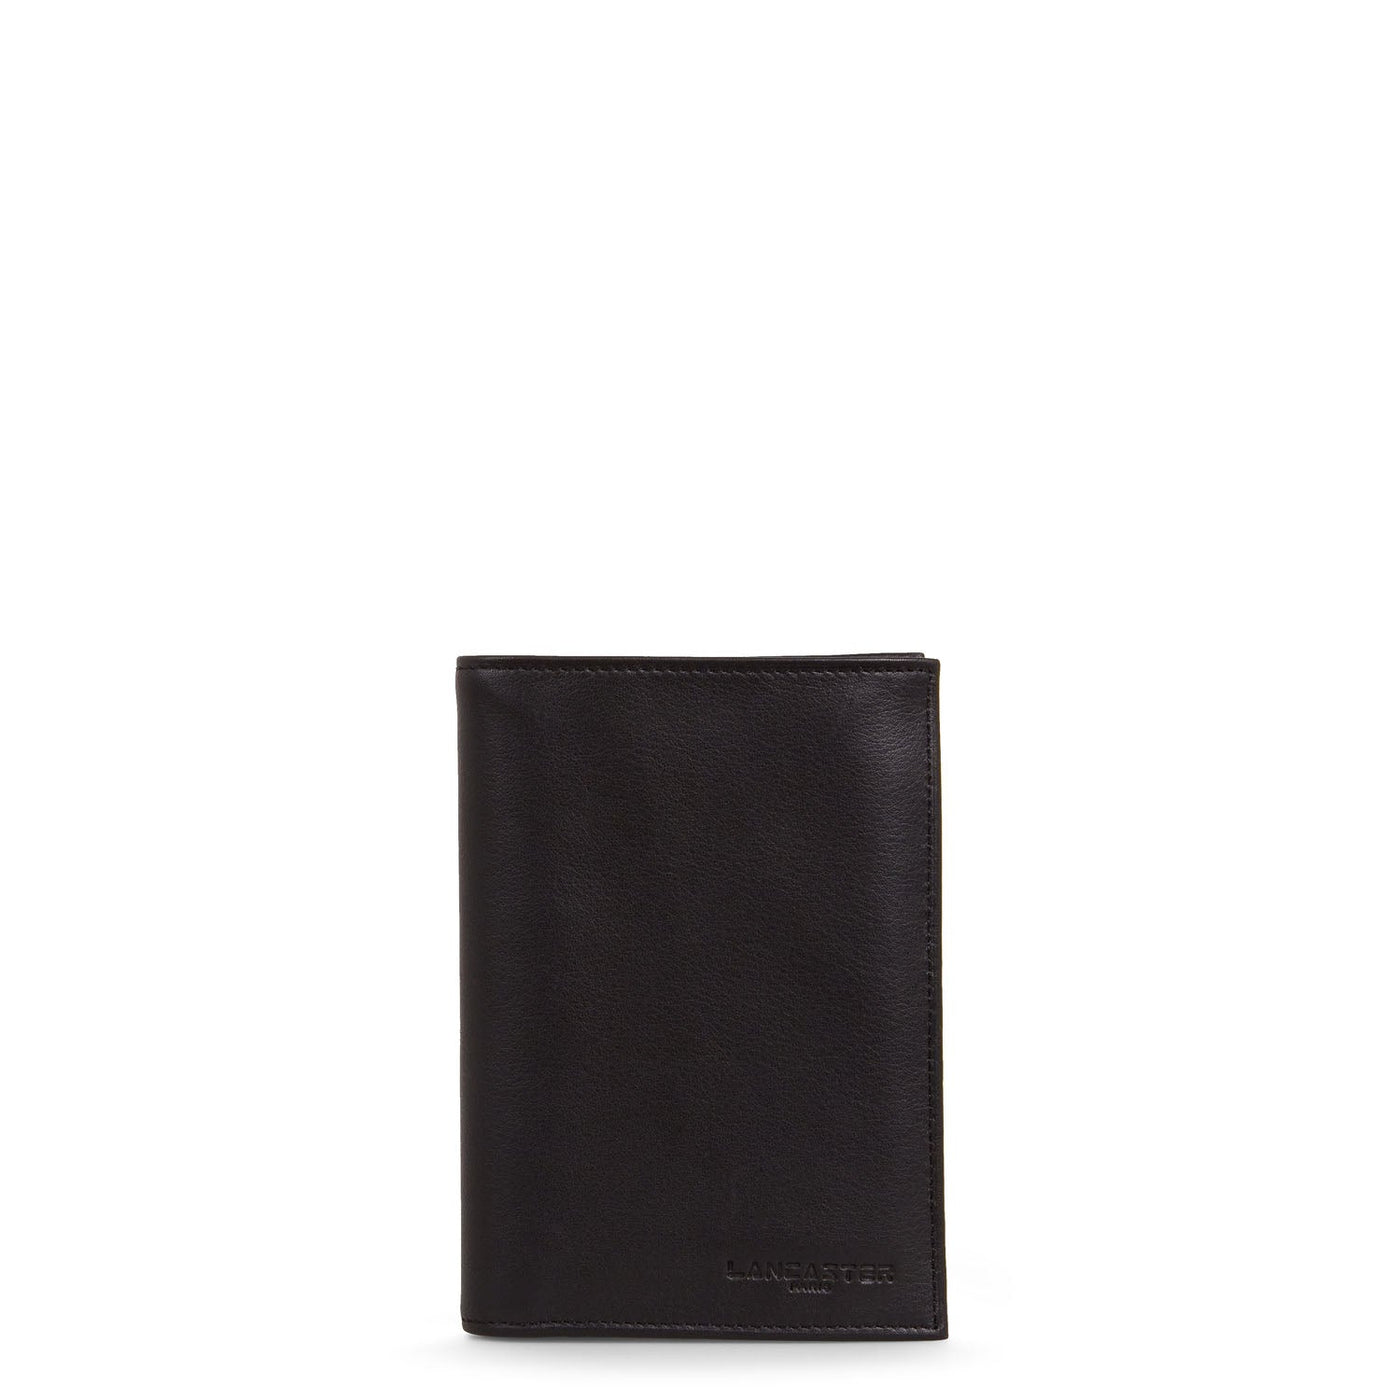 wallet - capital #couleur_noir